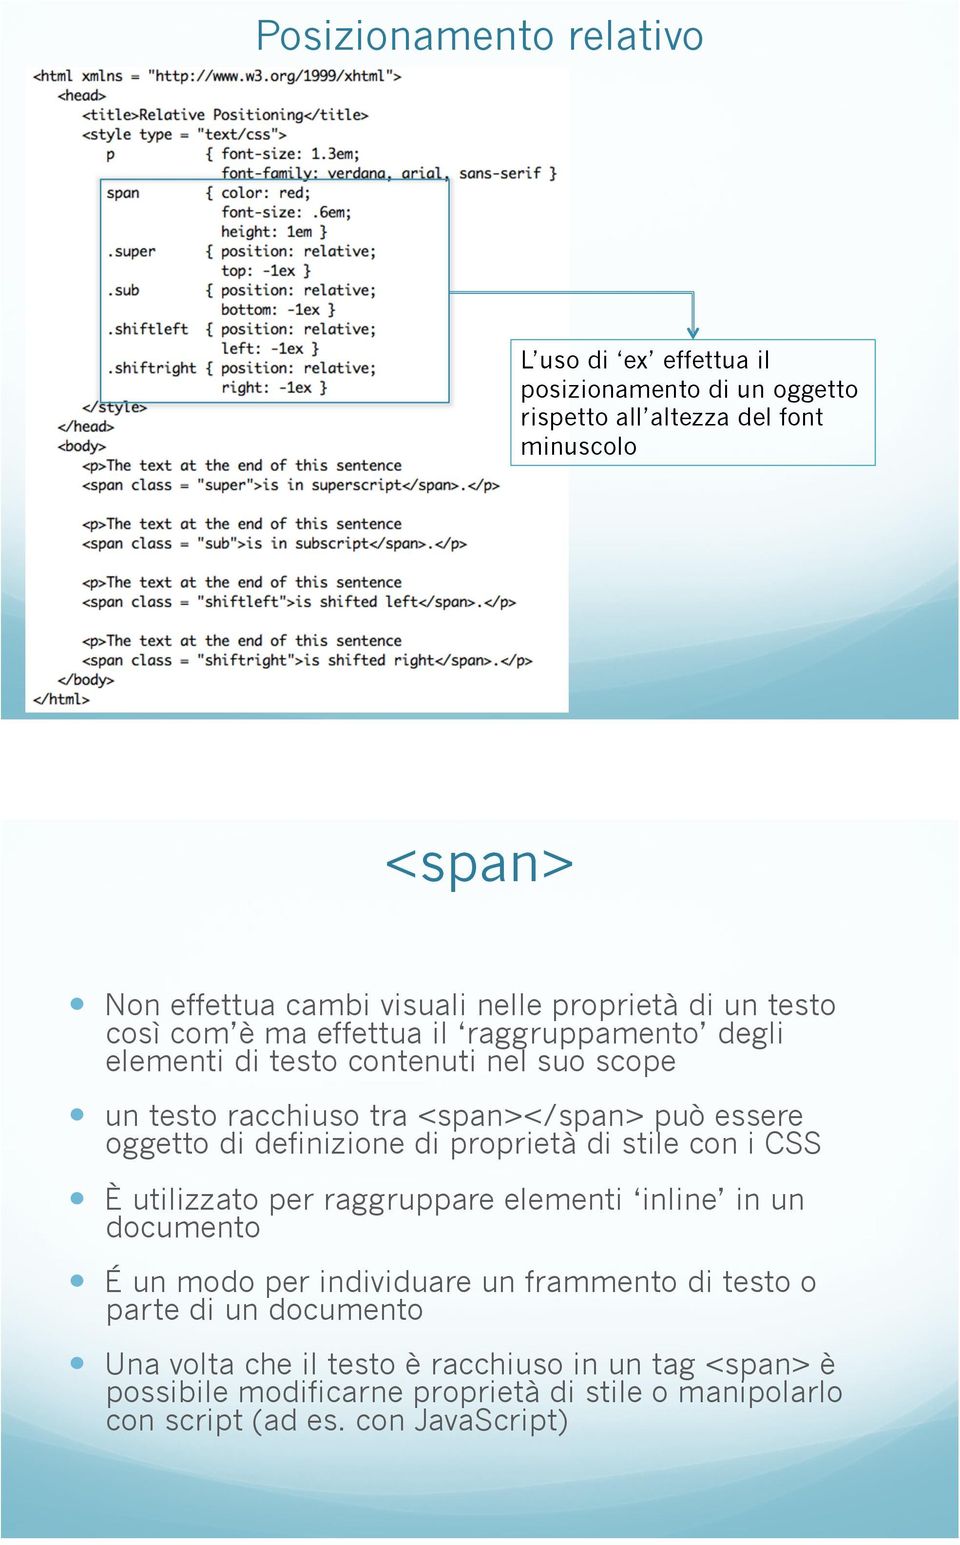 un testo racchiuso tra <span></span> può essere oggetto di definizione di proprietà di stile con i CSS!